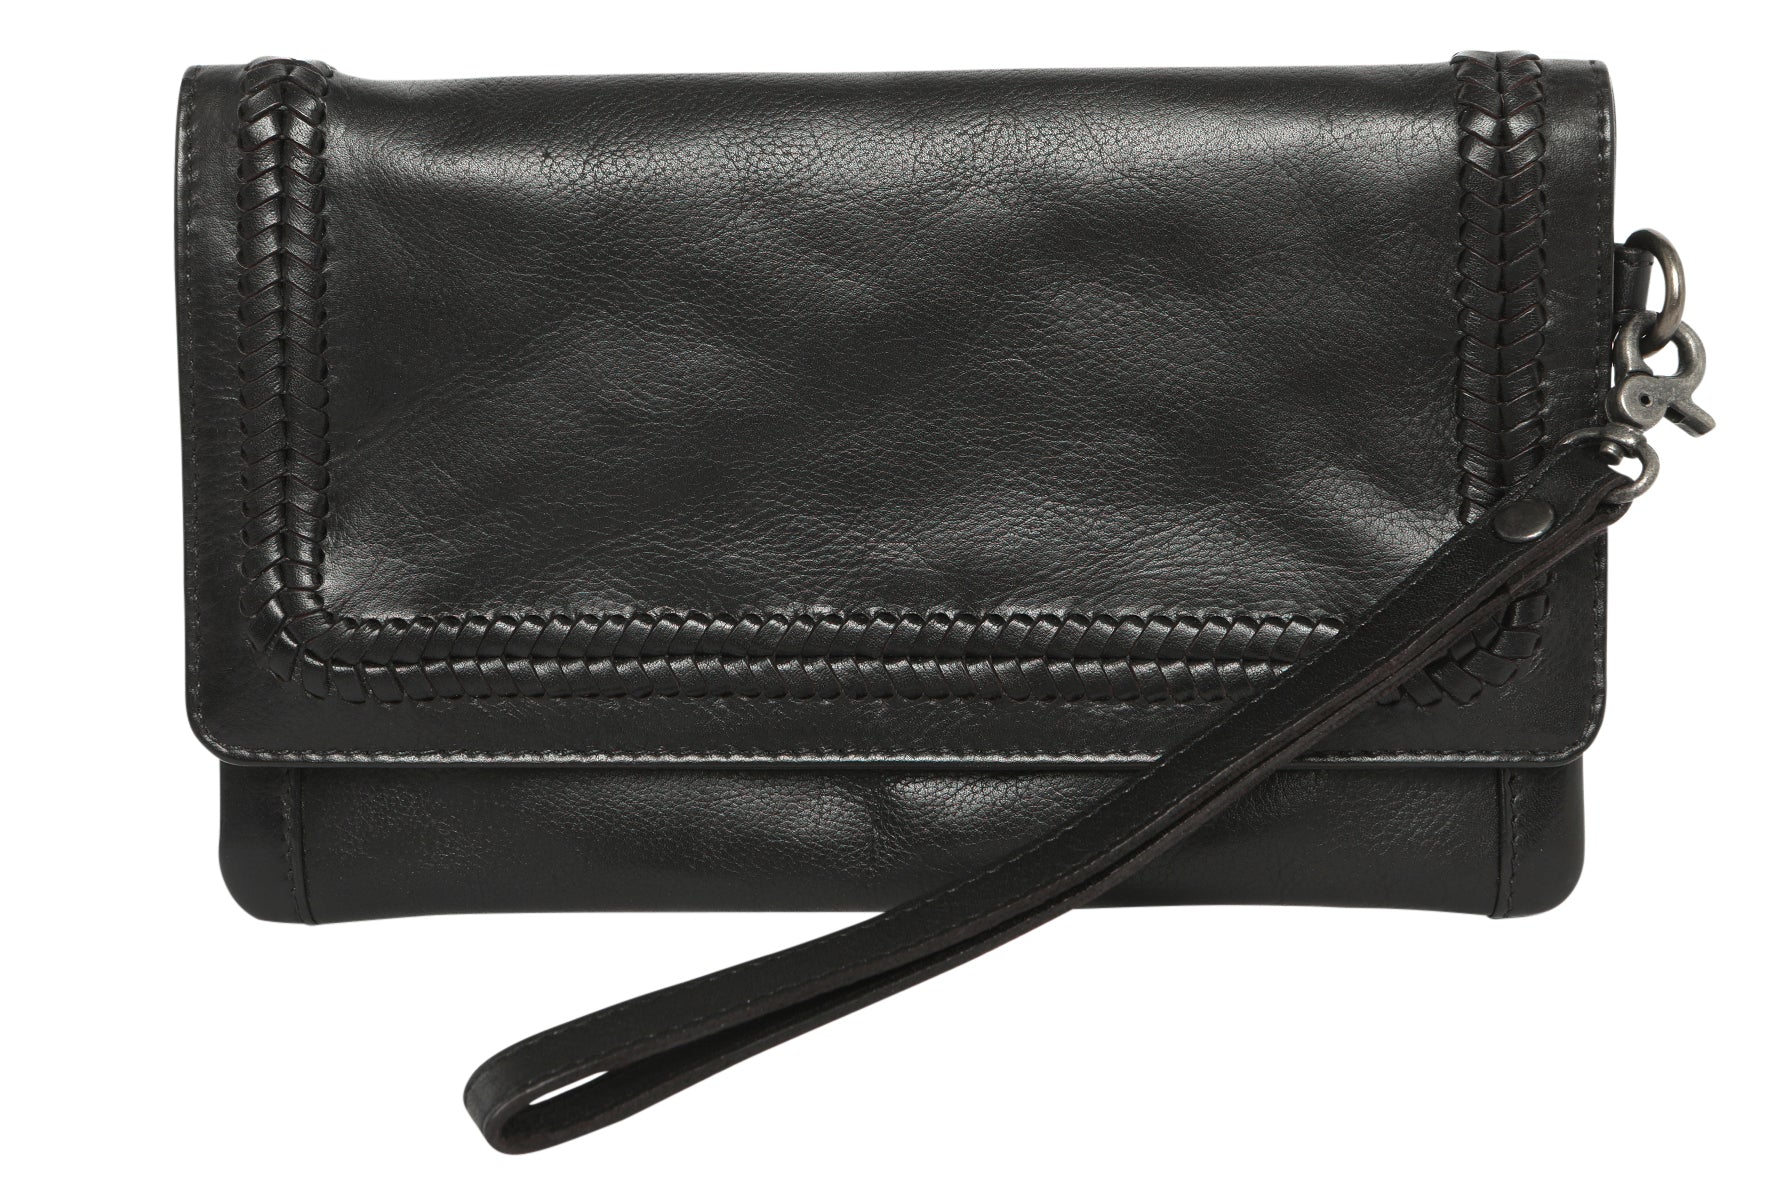 Modapelle Women's Leather Wrist Wallet